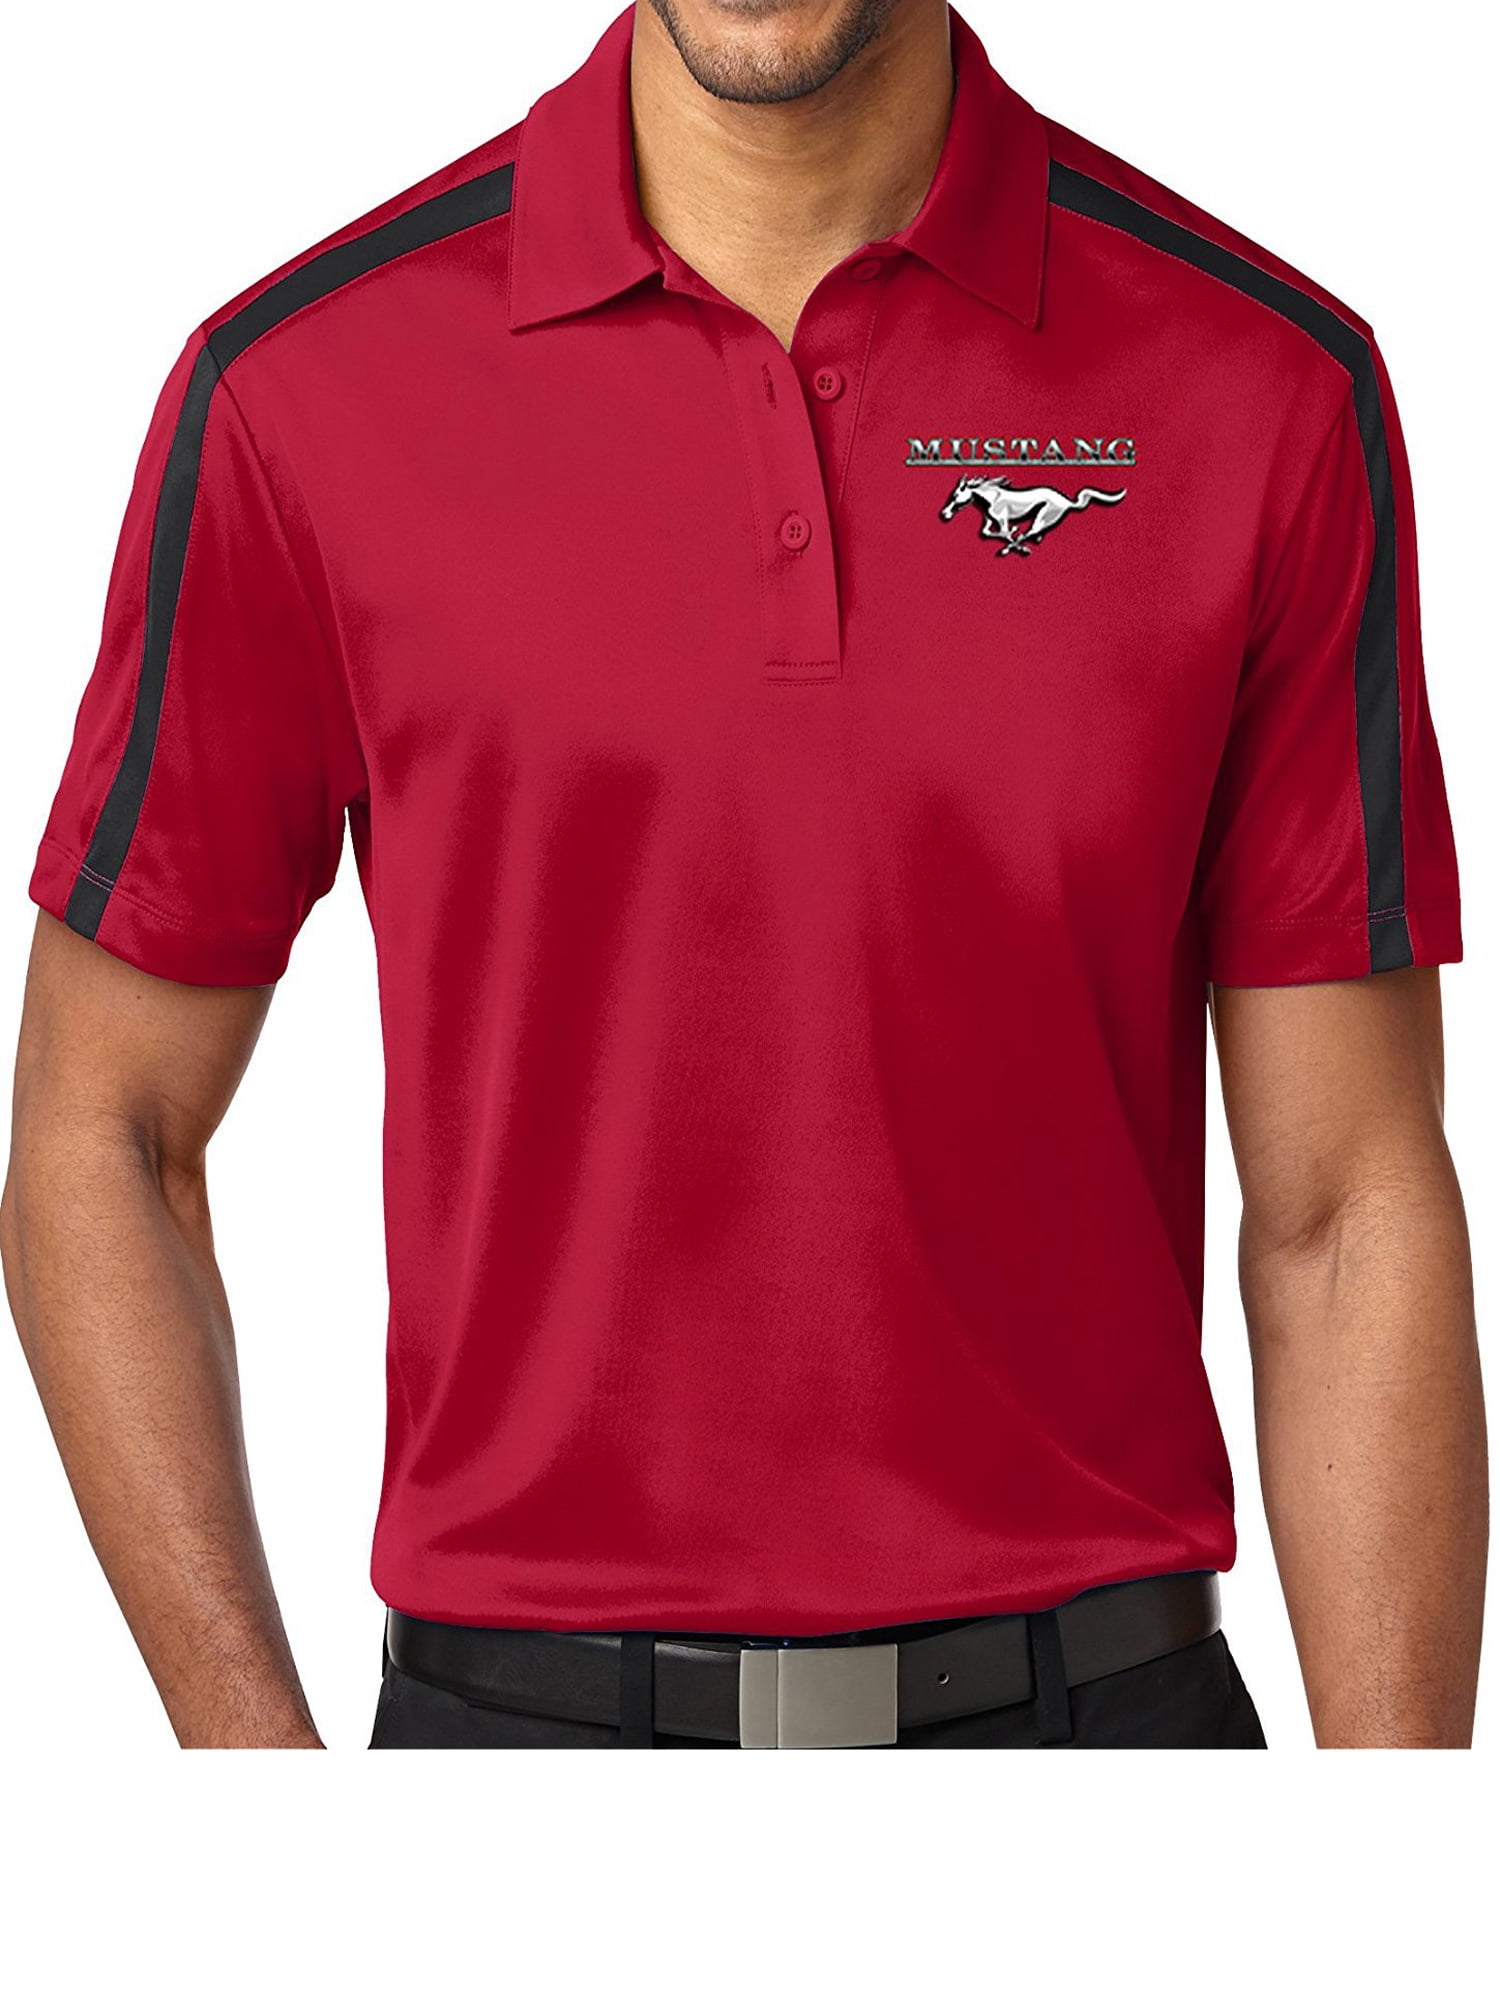 Buy Cool Shirts - Mens Mustang Pocket Colorblock Polo Shirt - Red